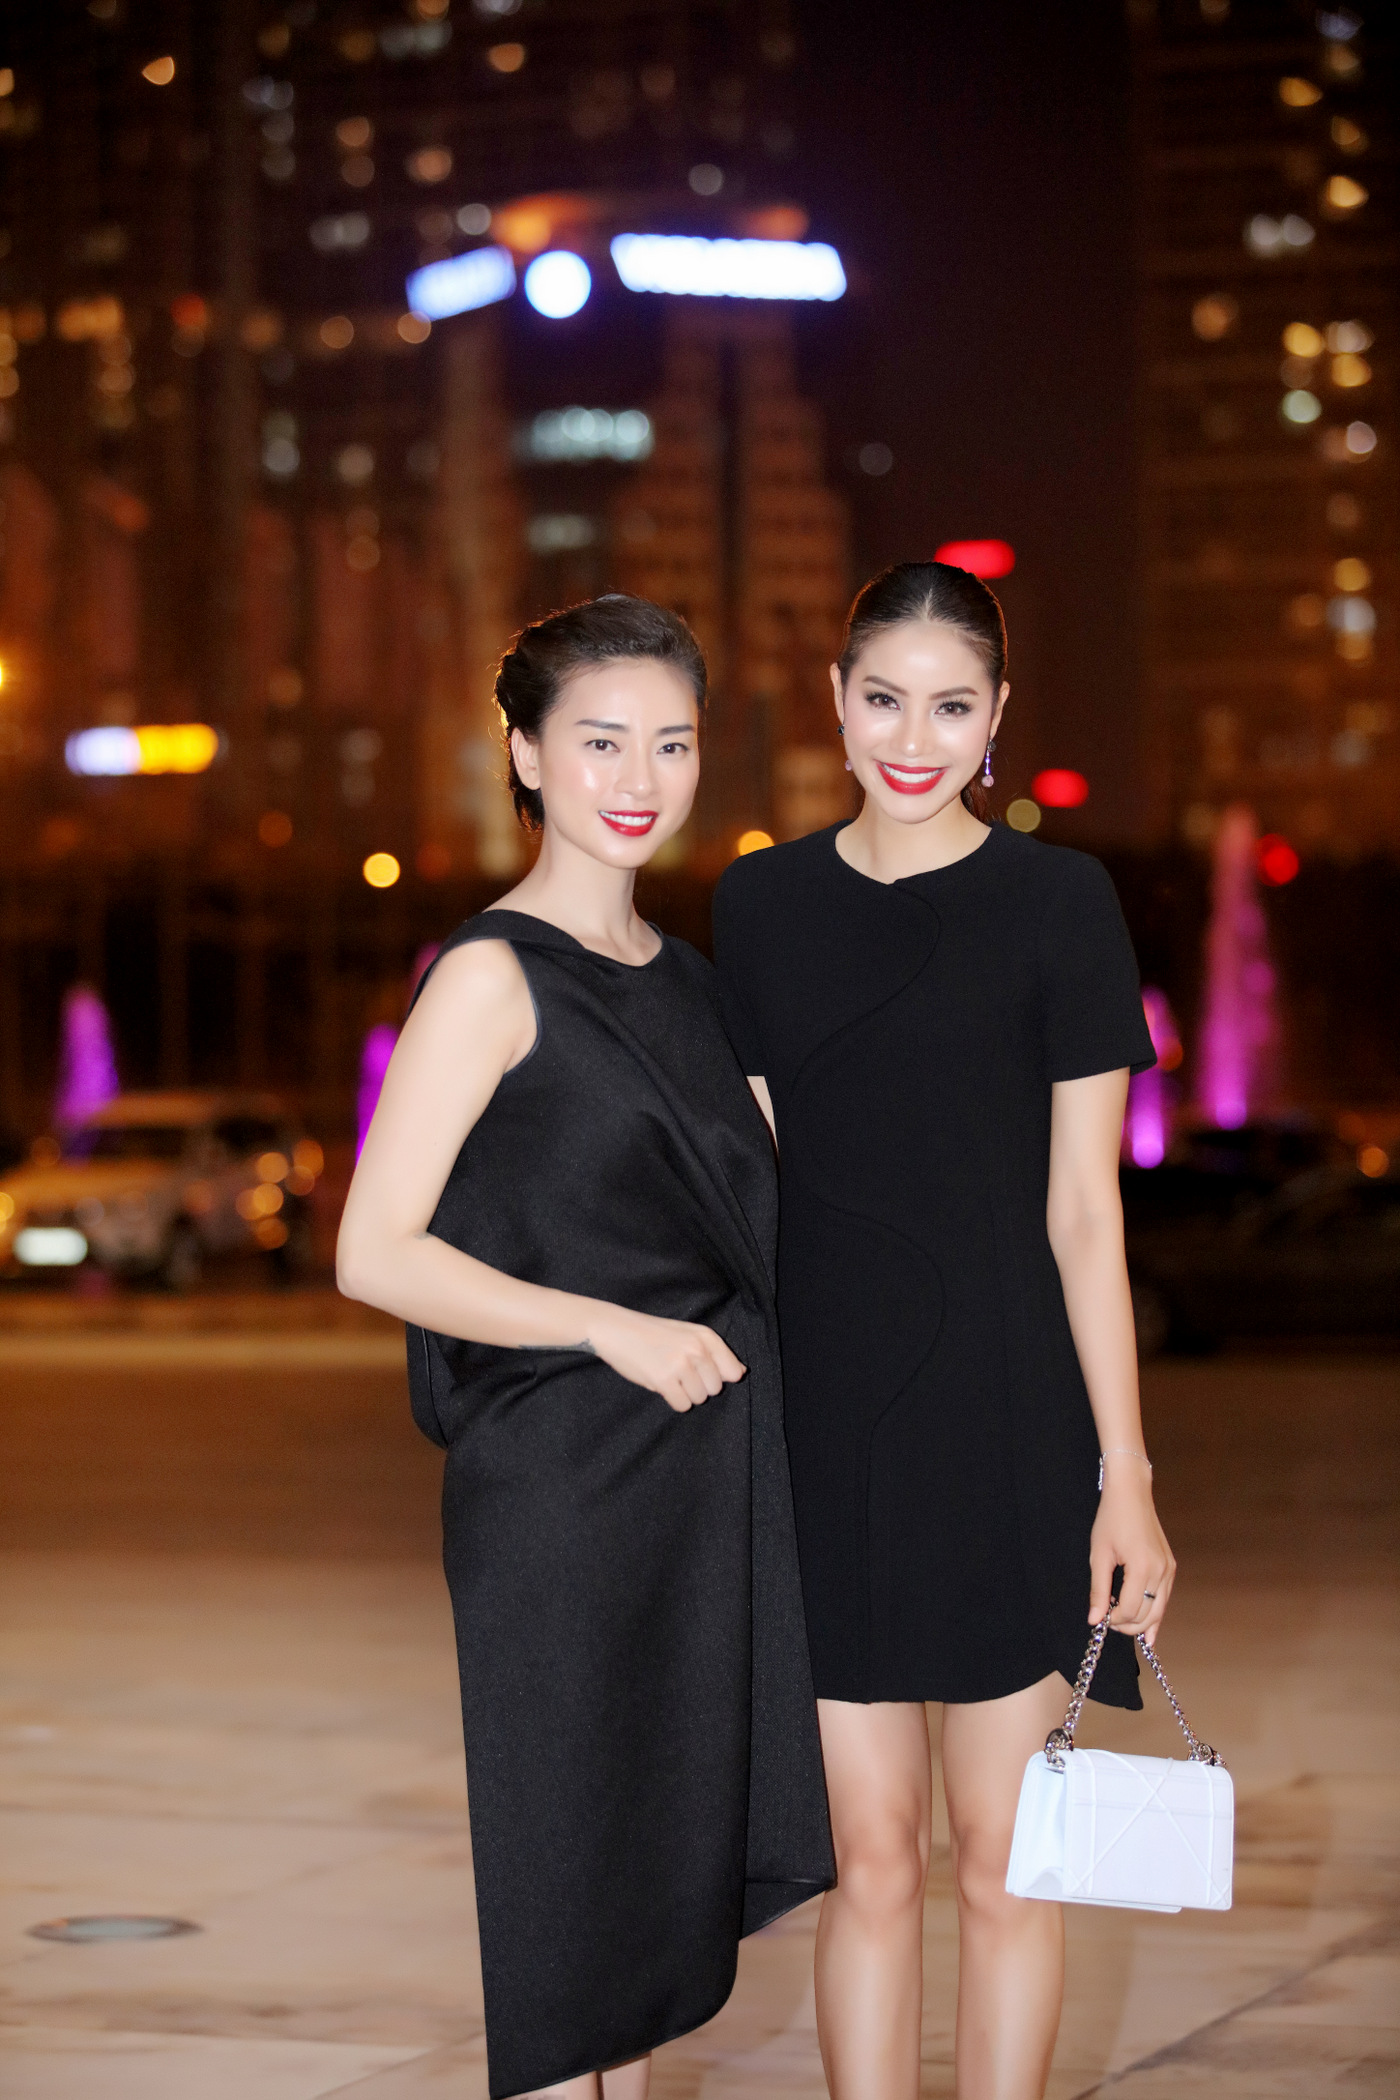 Tham dự sự kiện này, Hoa hậu Hoàn vũ Việt Nam 2015 có dịp hội ngộ “đả nữ” điện ảnh Việt Ngô Thanh Vân. Không hẹn mà gặp, cả hai cùng diện trang phục đen tuyền và chụp hình cùng nhau.